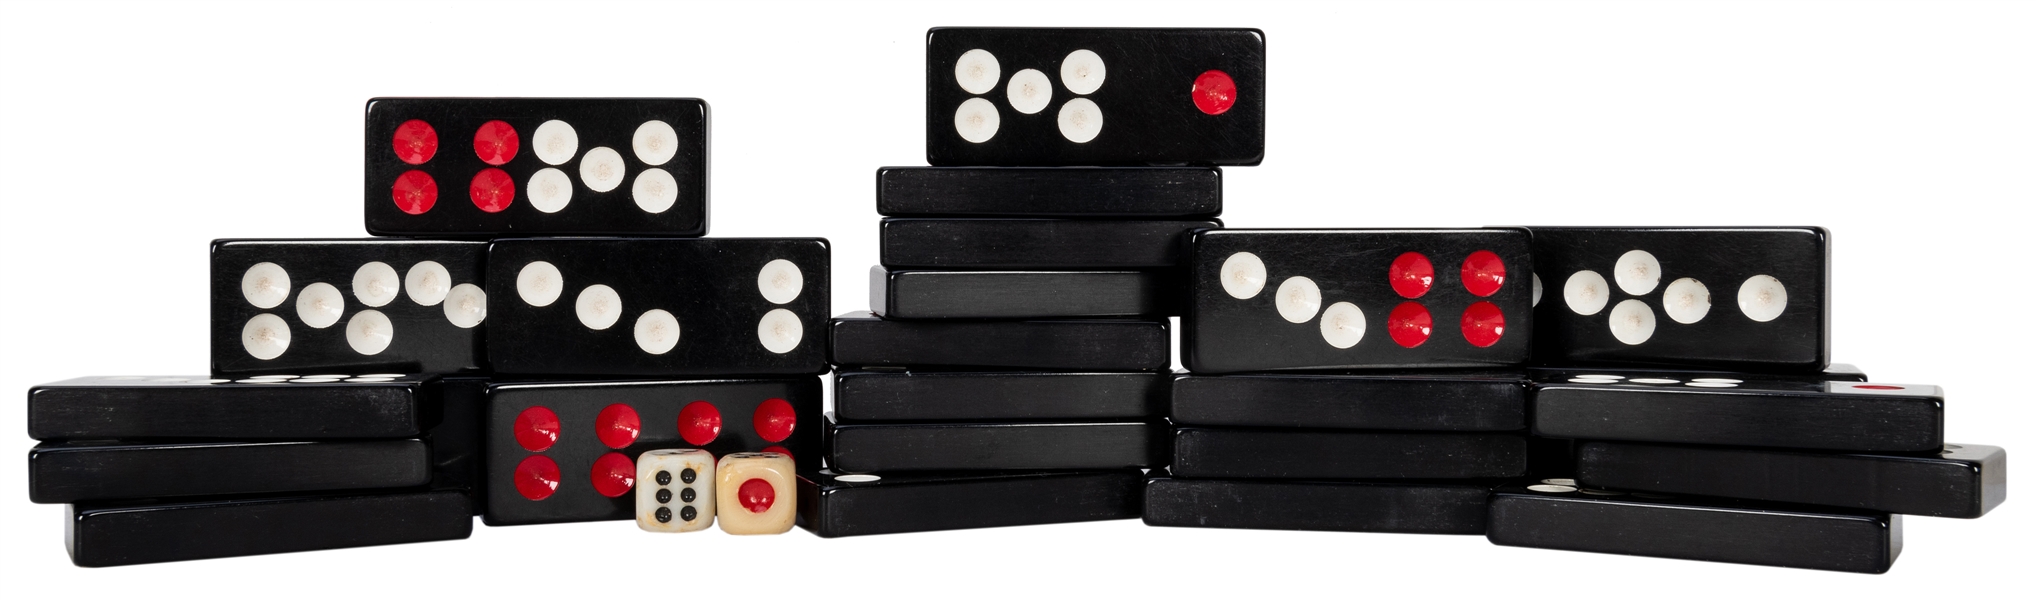  Pai Gow Chinese Domino Set.